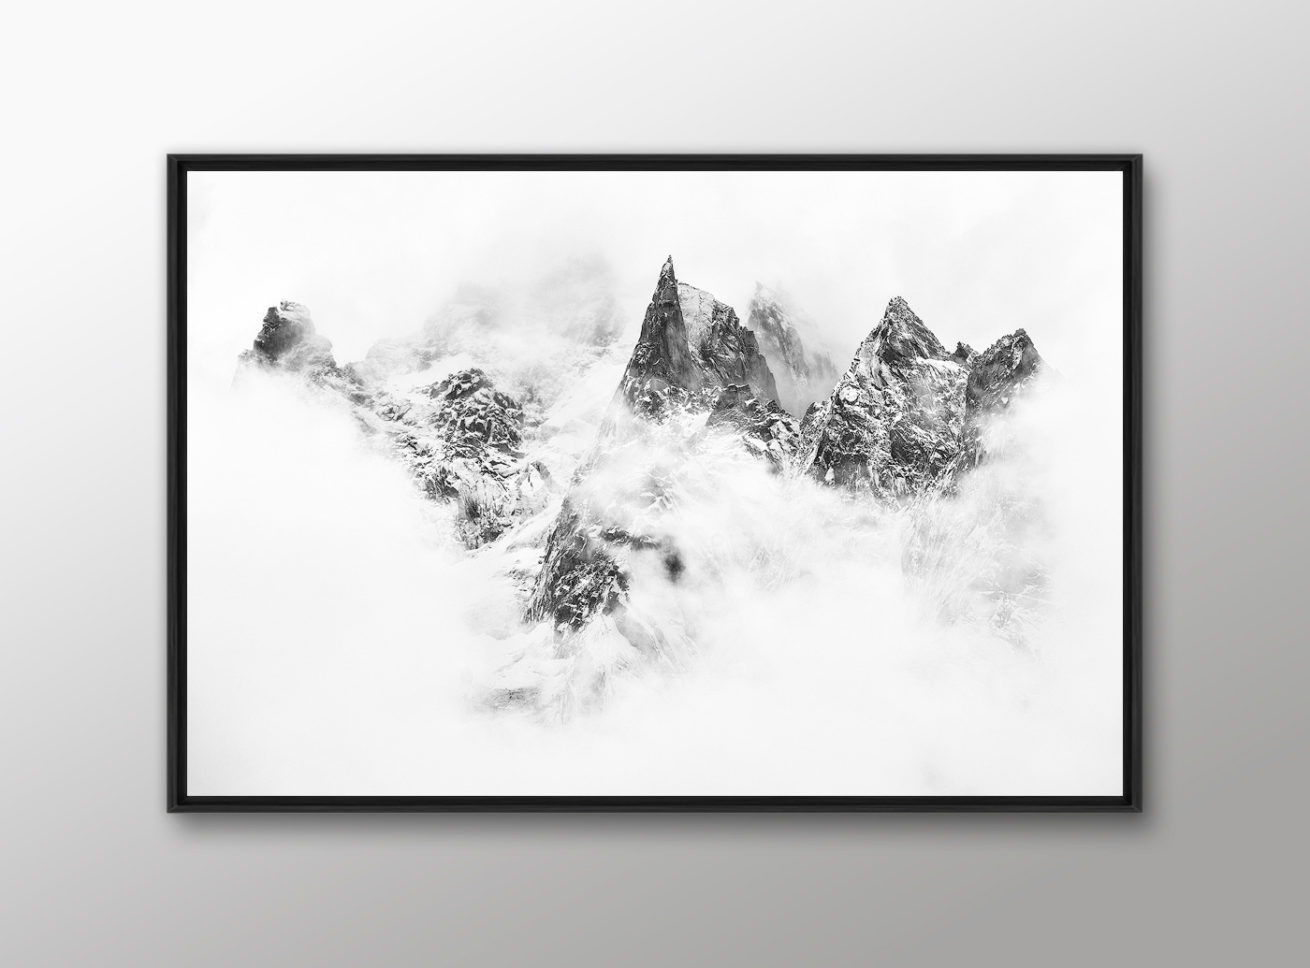 Idee cadeau photo montagne avec un tableau photo noir et blanc encadree